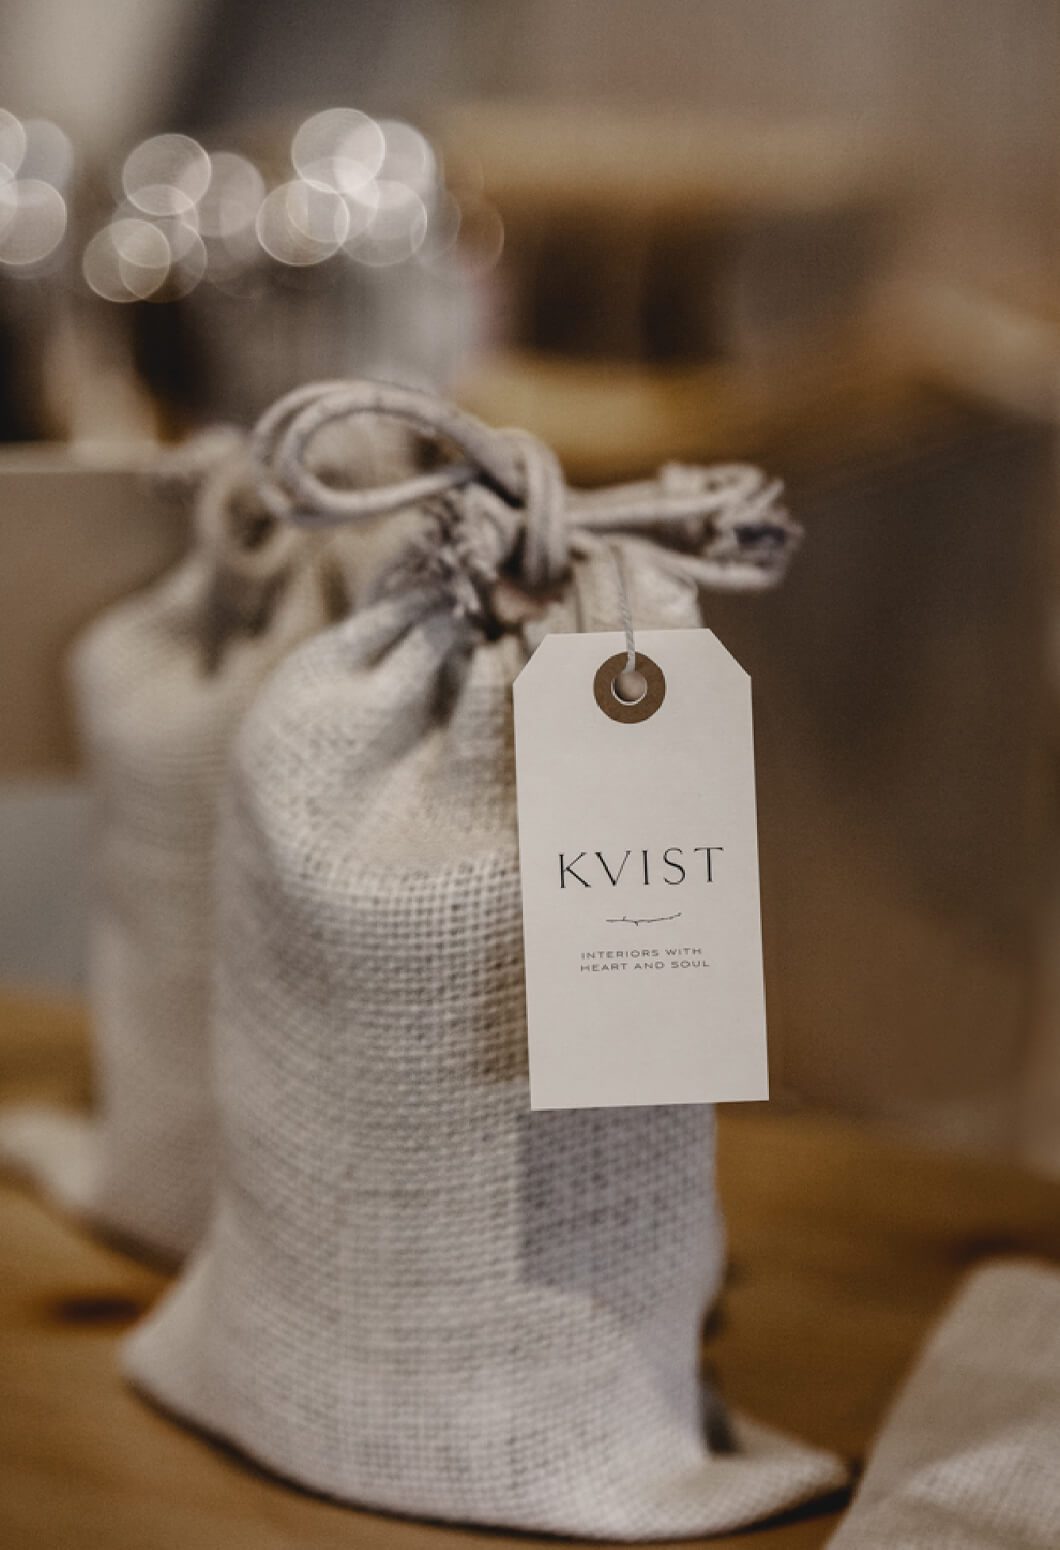 Branded packaging for KVIST